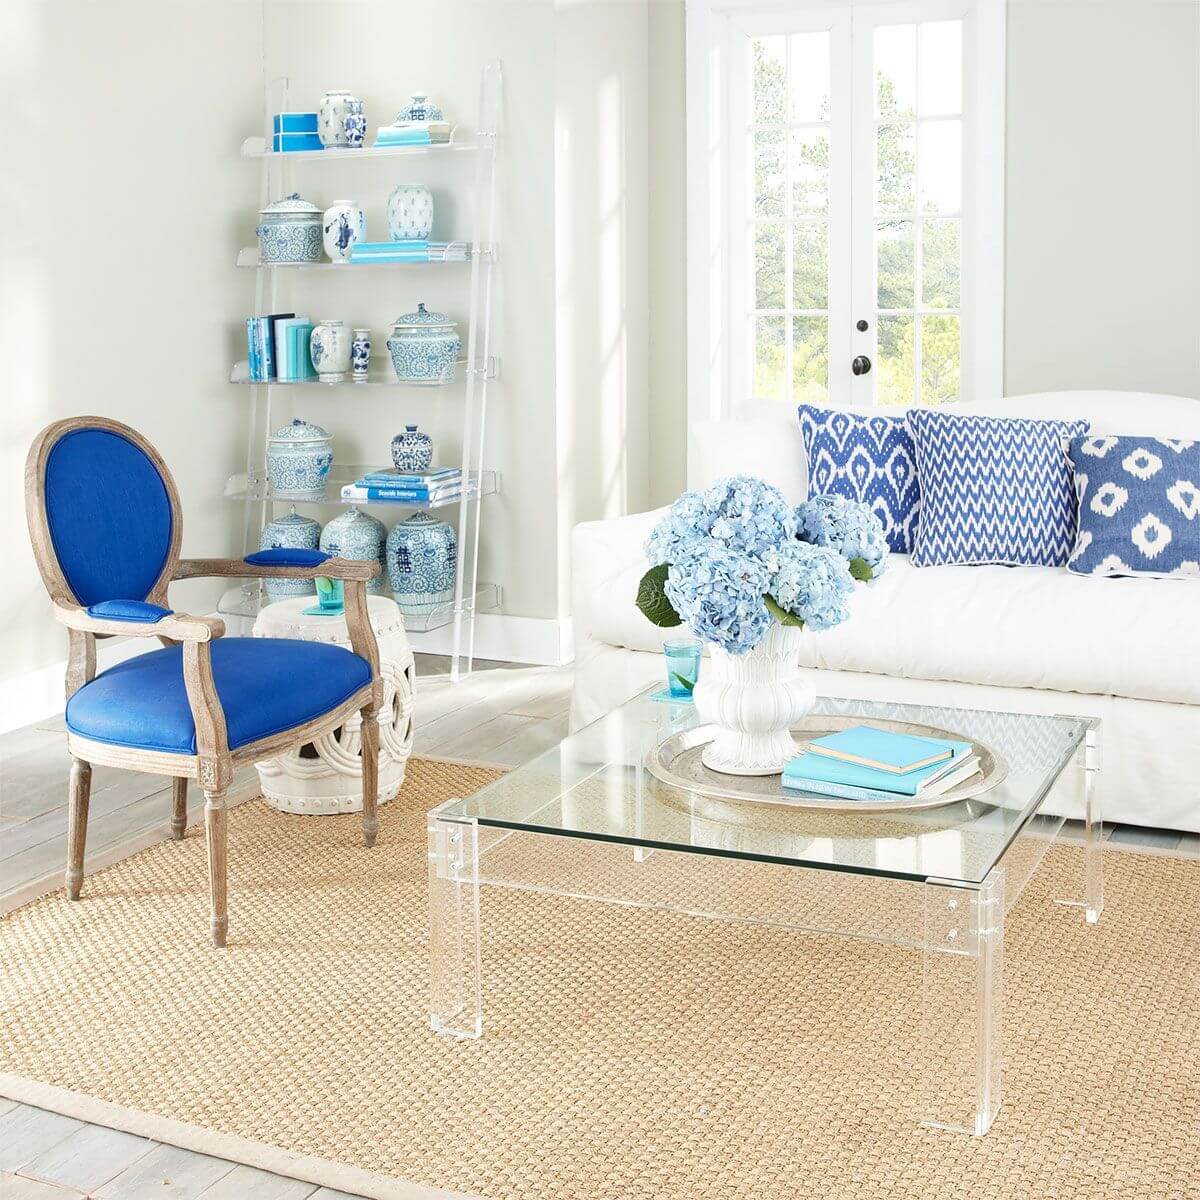 Nội thất acrylic thực sự tuyệt vời vì chúng không cản trở tầm nhìn của chúng ta, chẳng hạn như ở phòng khách này, cả bàn nước và kệ hình thang đều trở thành phông nền cho phụ kiện xanh lam tỏa sáng.